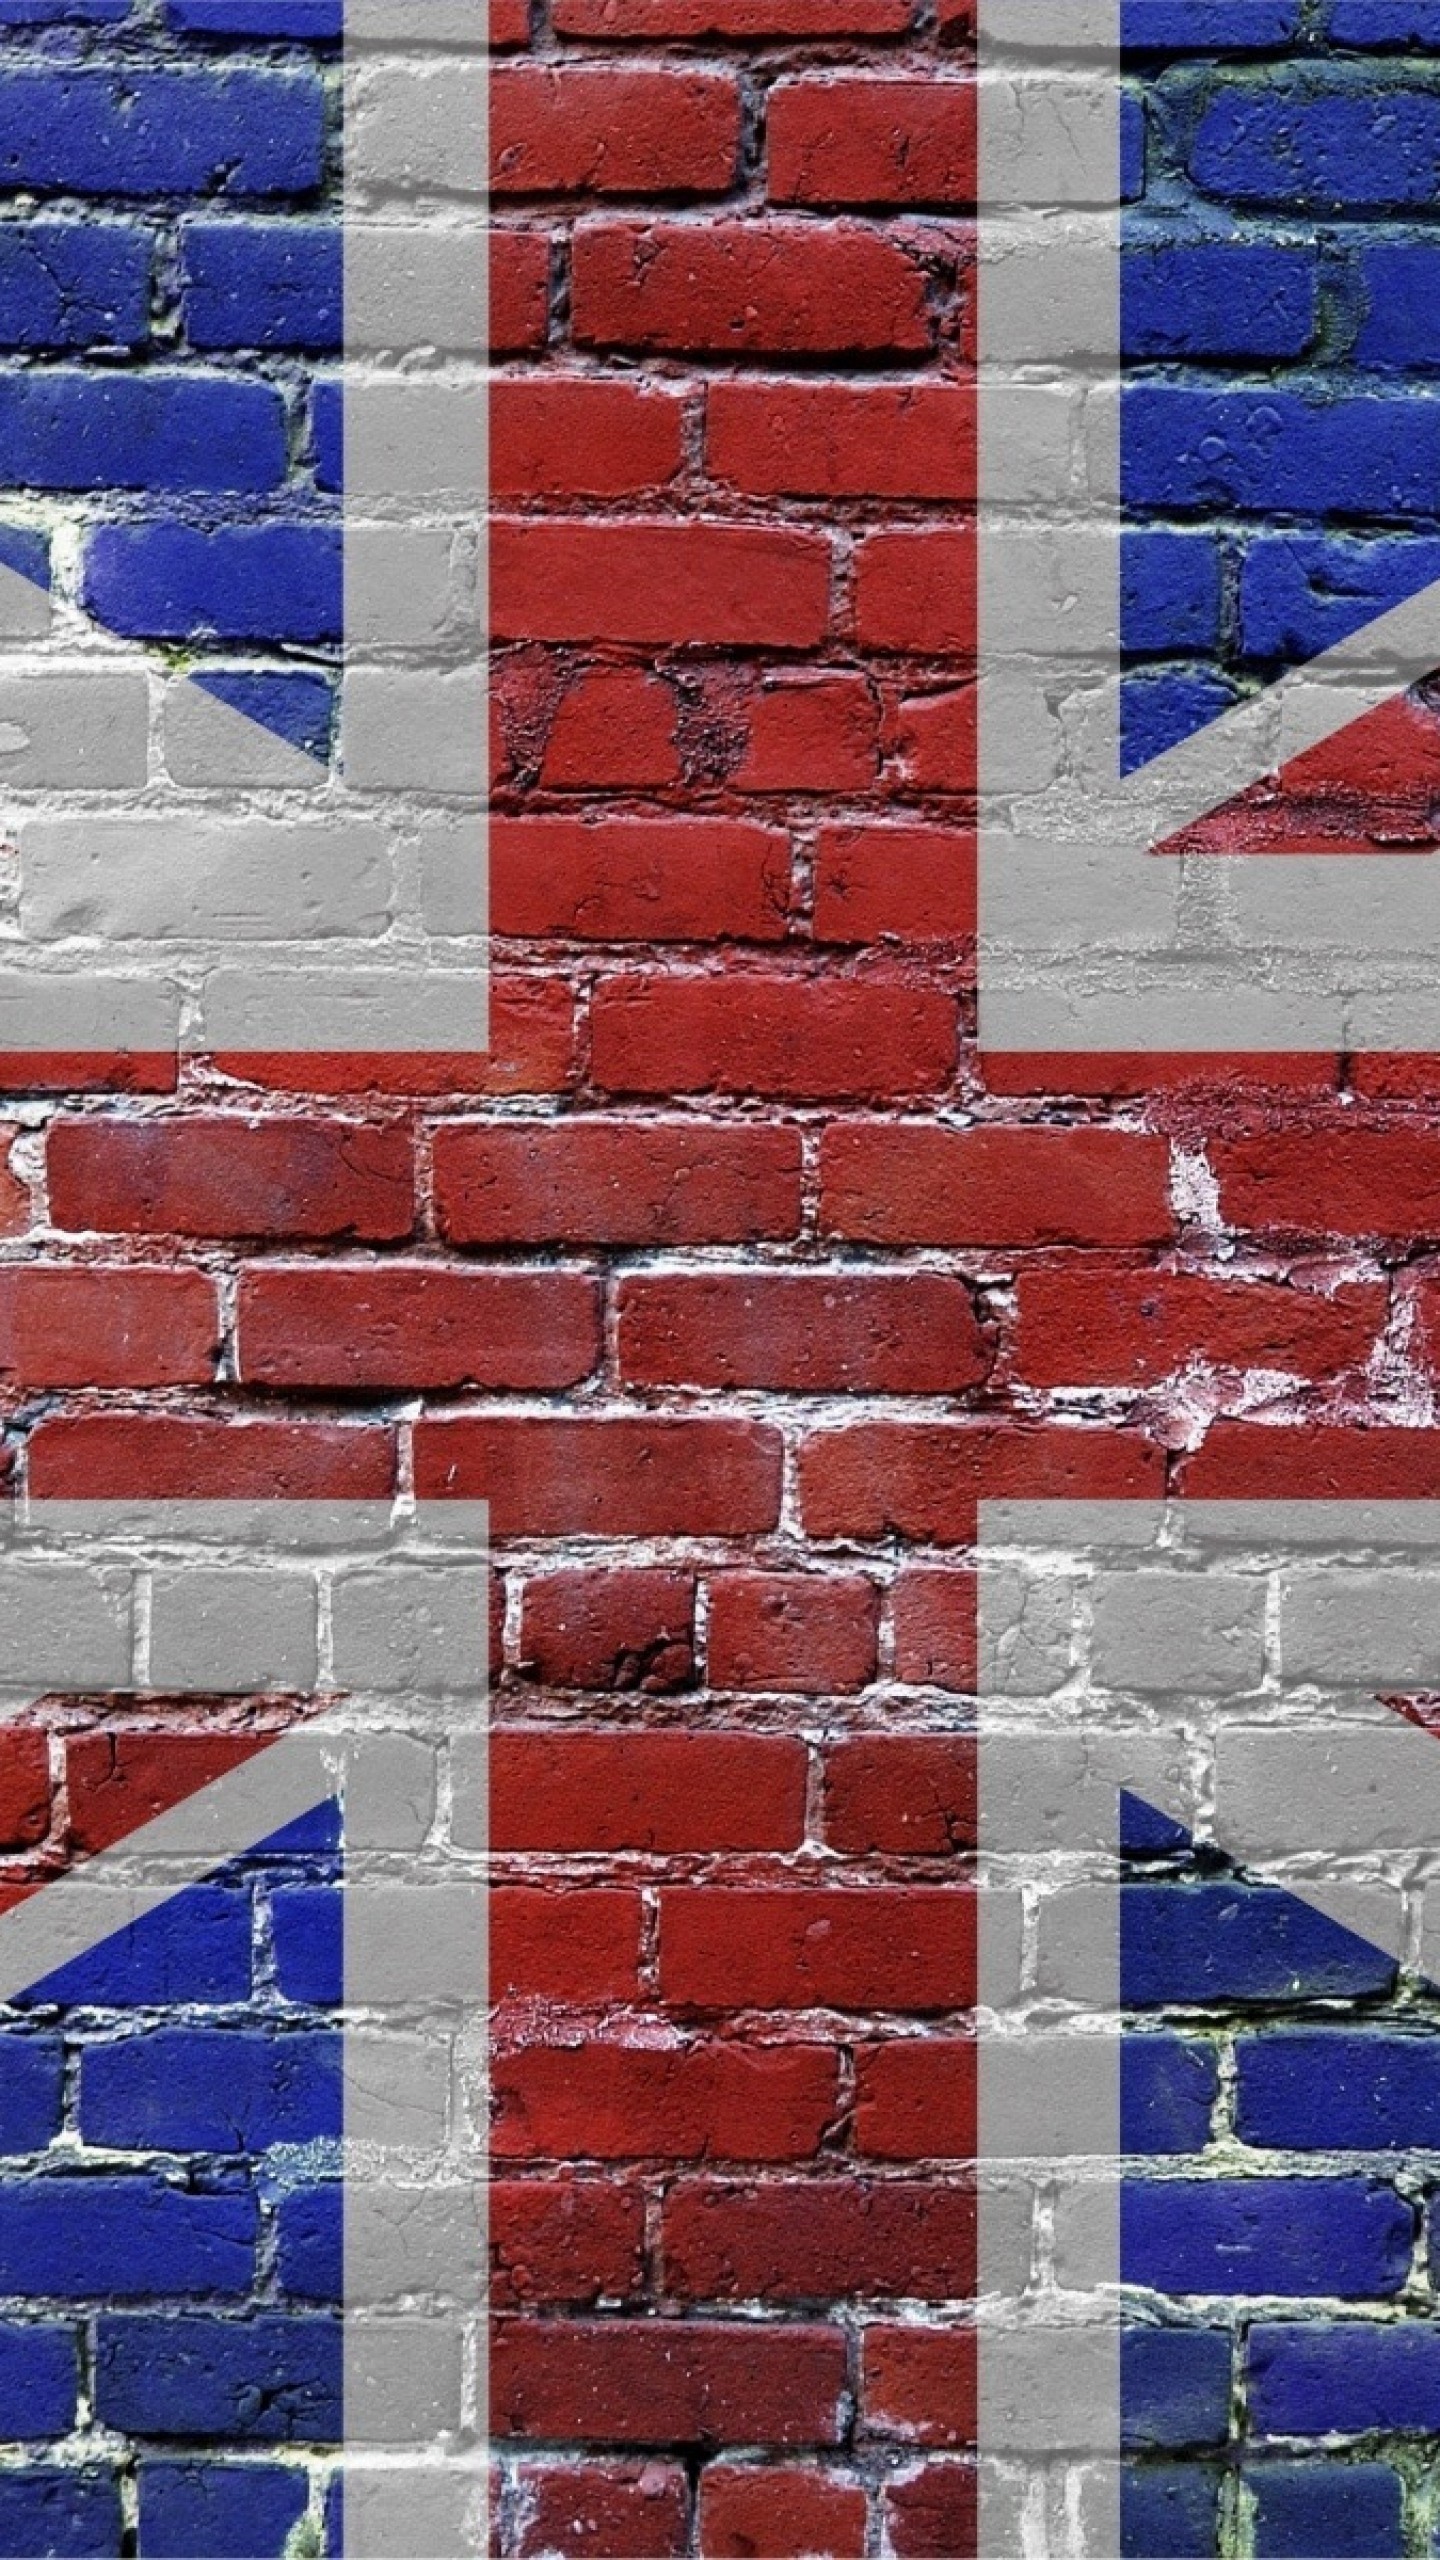 1440x2560 most-popular-uk-flag-wallpaper-1440Ã2560-WTG20069036